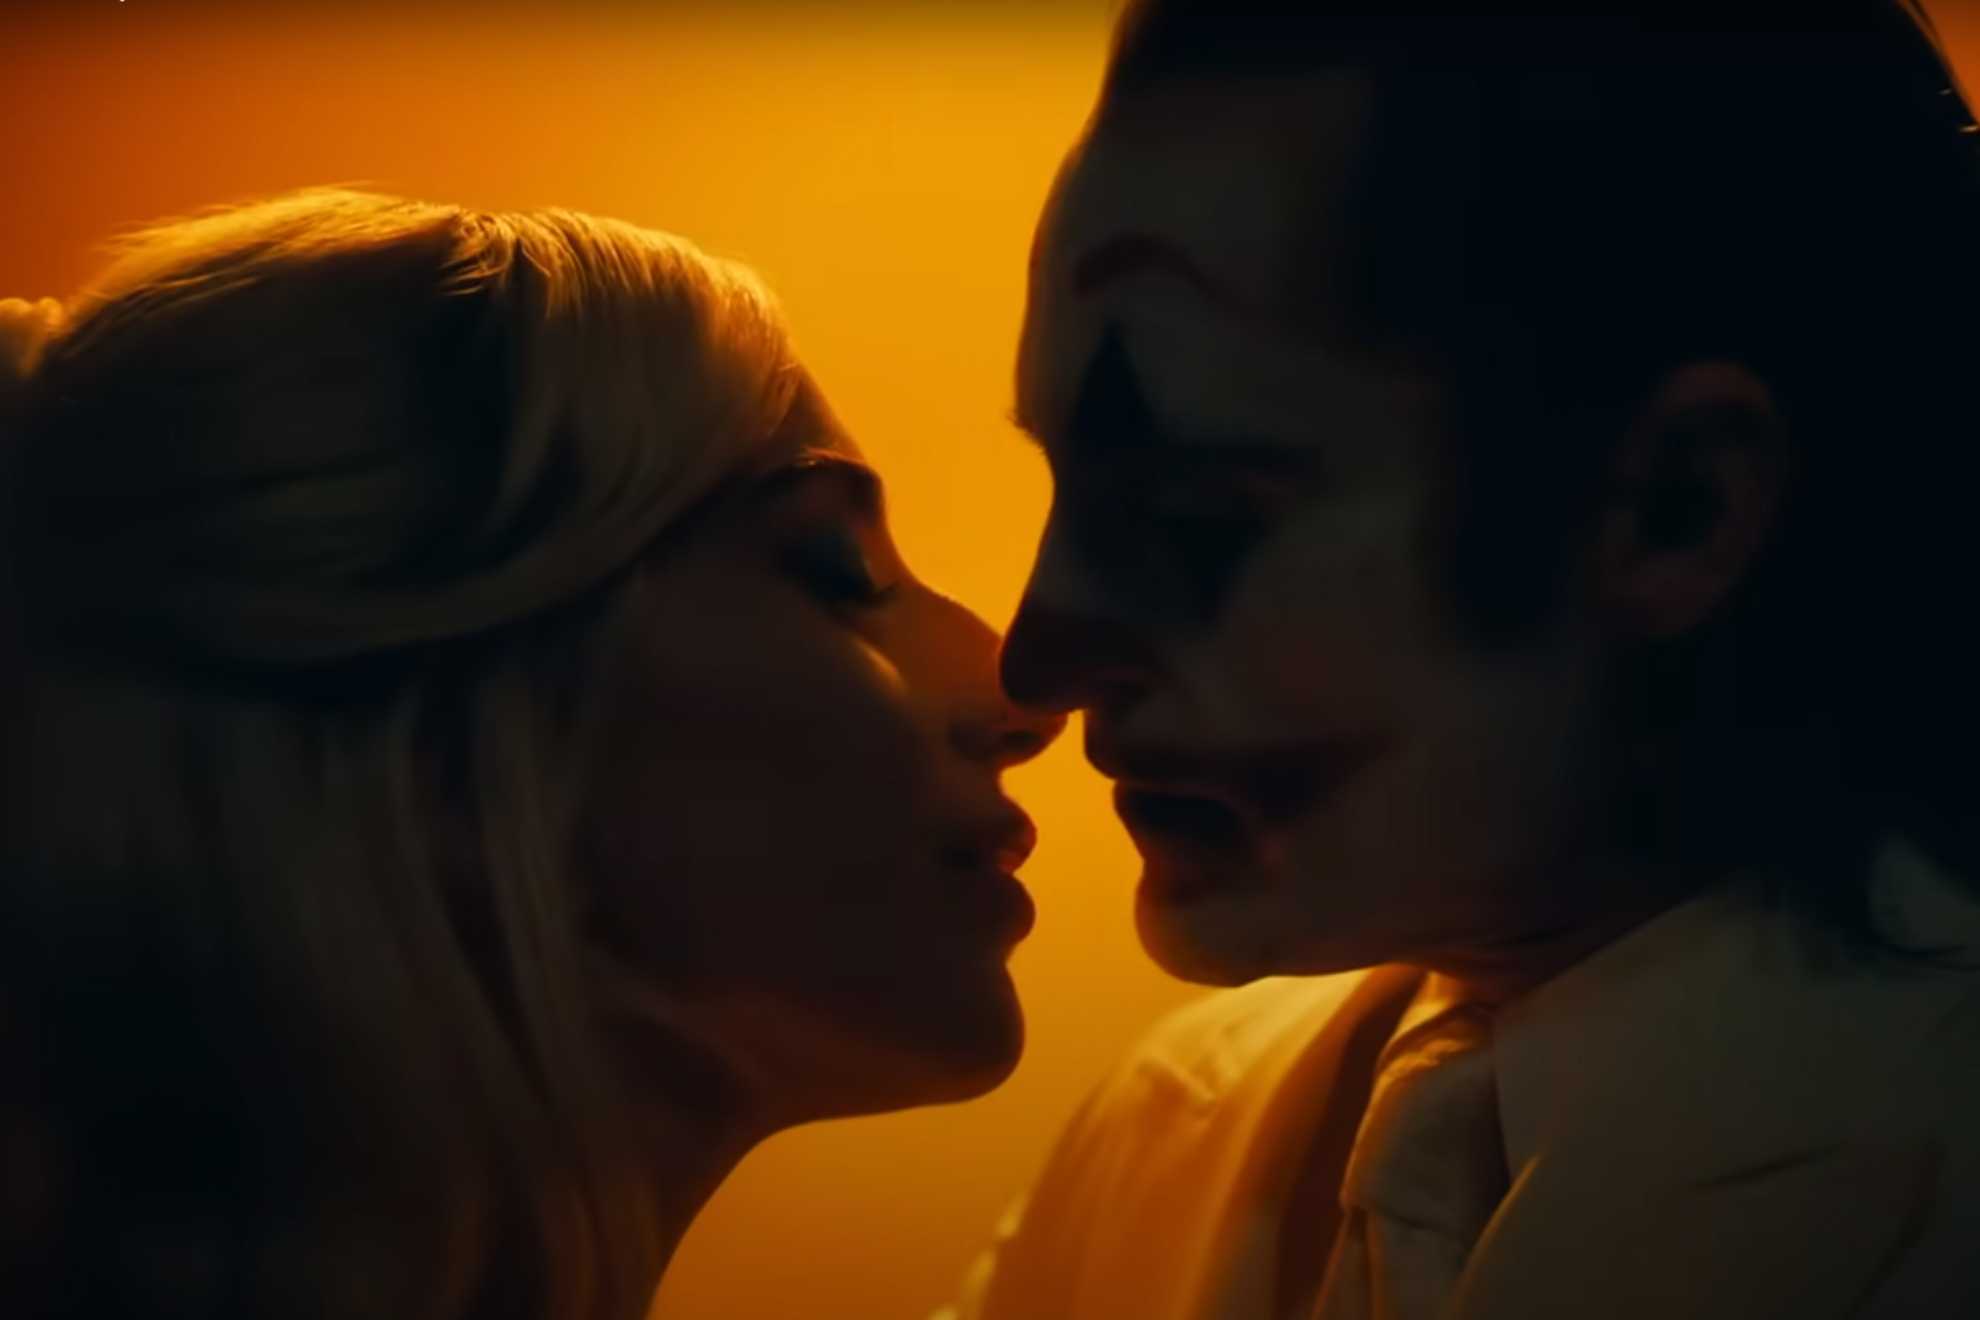 Se estrena el espectacular triler de Joker 2 con Joaquin Phoenix y Lady Gaga